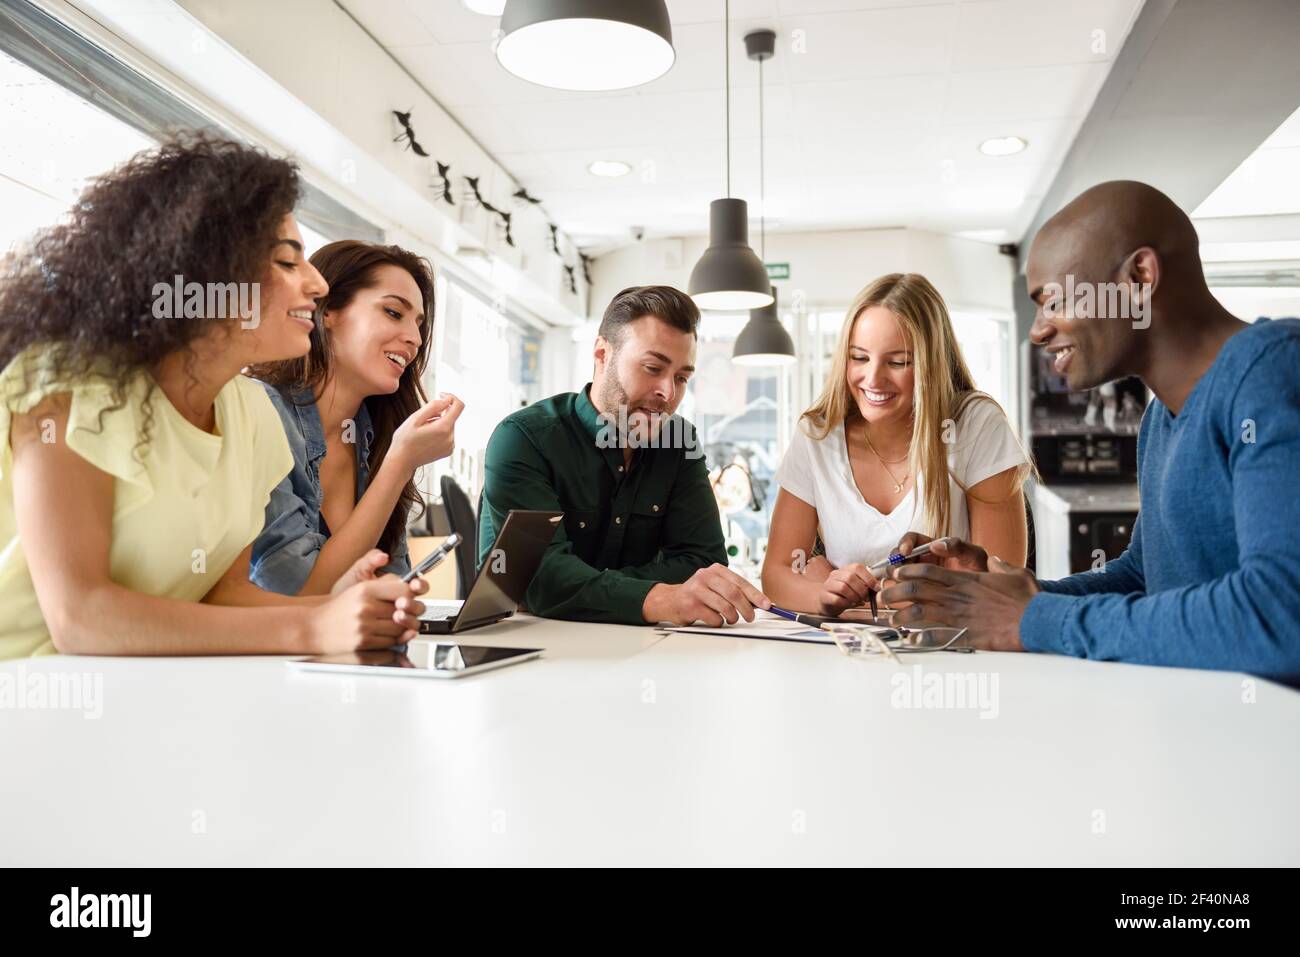 Fünf junge Menschen, die mit Laptop und Tablet auf weißem Schreibtisch studieren. Schöne Mädchen und Jungs arbeiten zusammen tragen legere Kleidung. Multi-ethnische Gruppe lächelt.. Multiethnische Gruppe von jungen Menschen, die gemeinsam am weißen Schreibtisch studieren Stockfoto